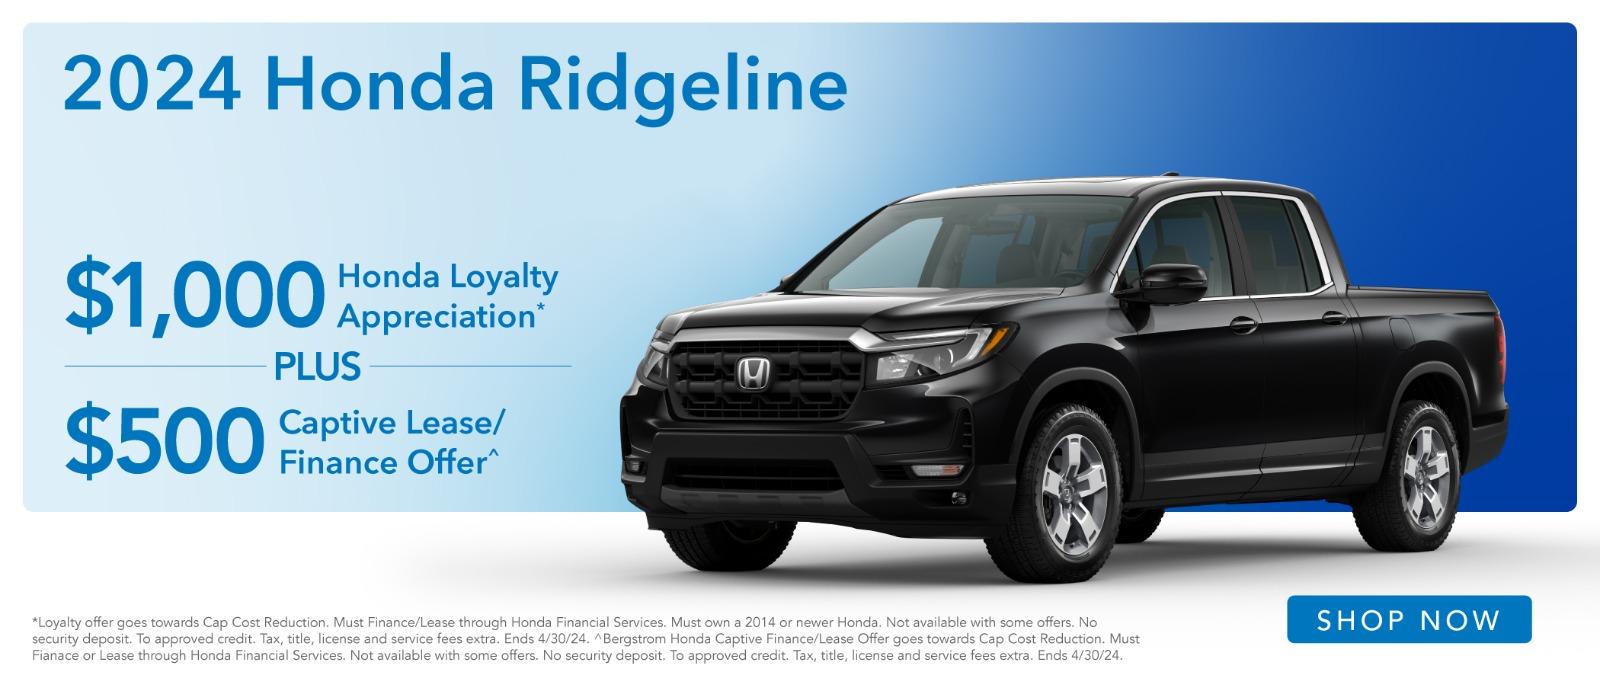 2024 Honda Ridgeline $1,000 Loyalty Appreciation